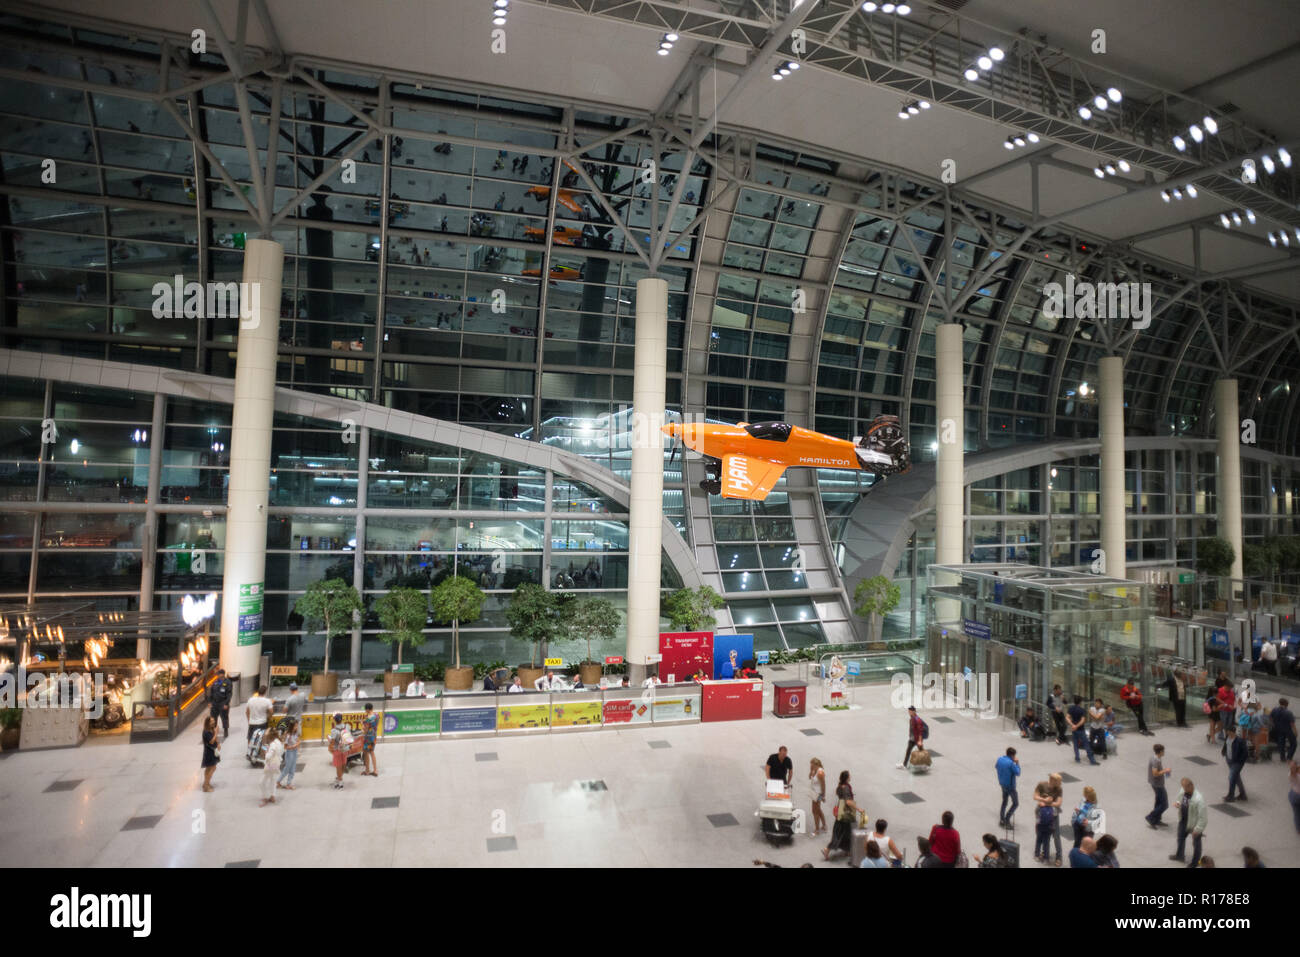 Mosca Domodedovo, Russia - Luglio 8, 2018: Hall dell'Aeroporto Internazionale di Domodedovo a Mosca con i passeggeri all'interno. Notte Tempo. Aeroplano arancione Foto Stock